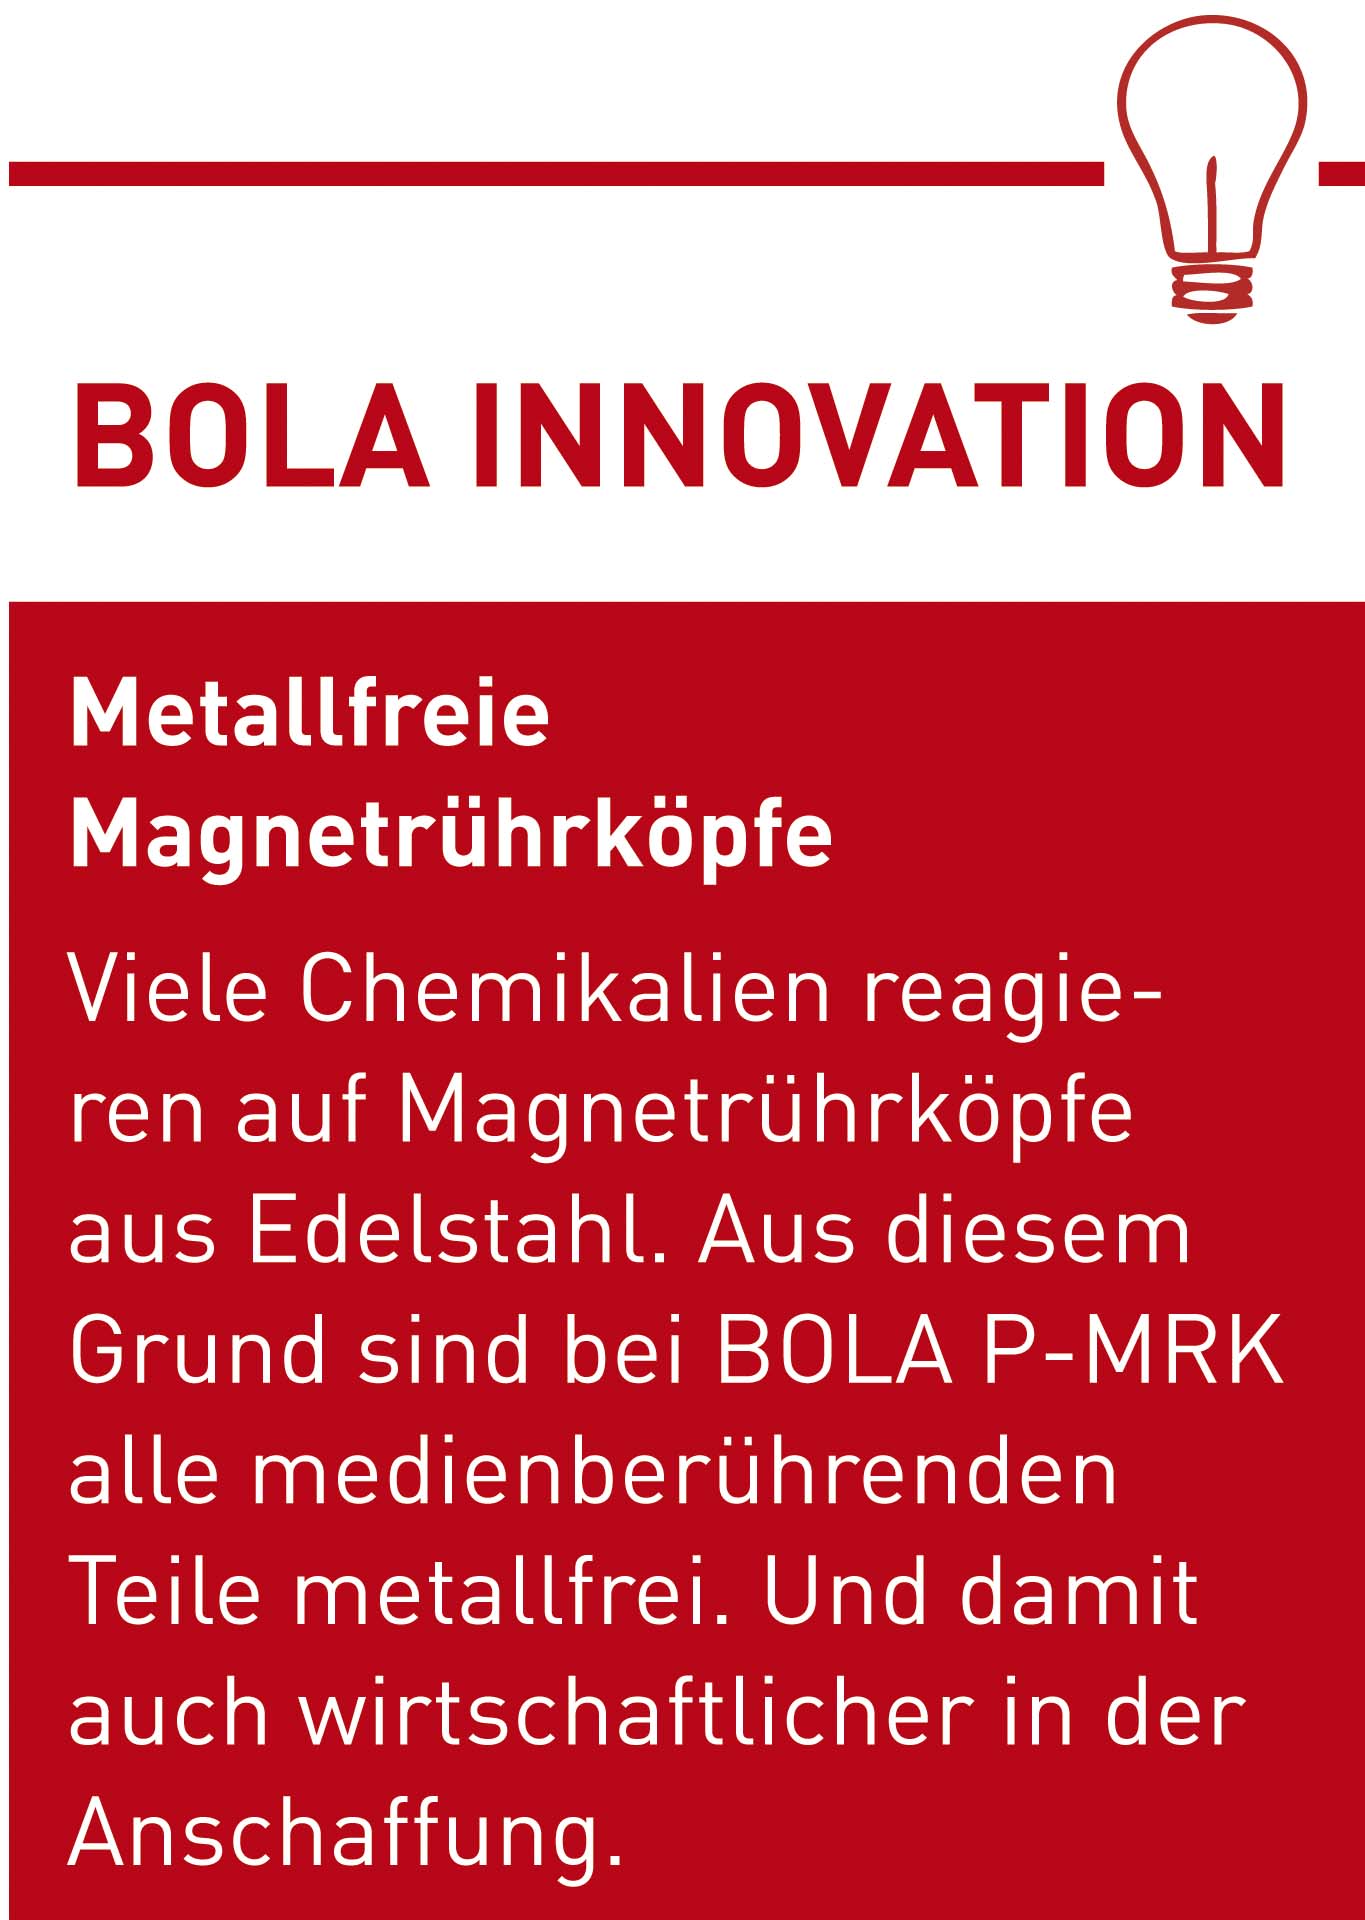 BOLA Innovation metallfreie Magnetruehrkoepfe D.jpg